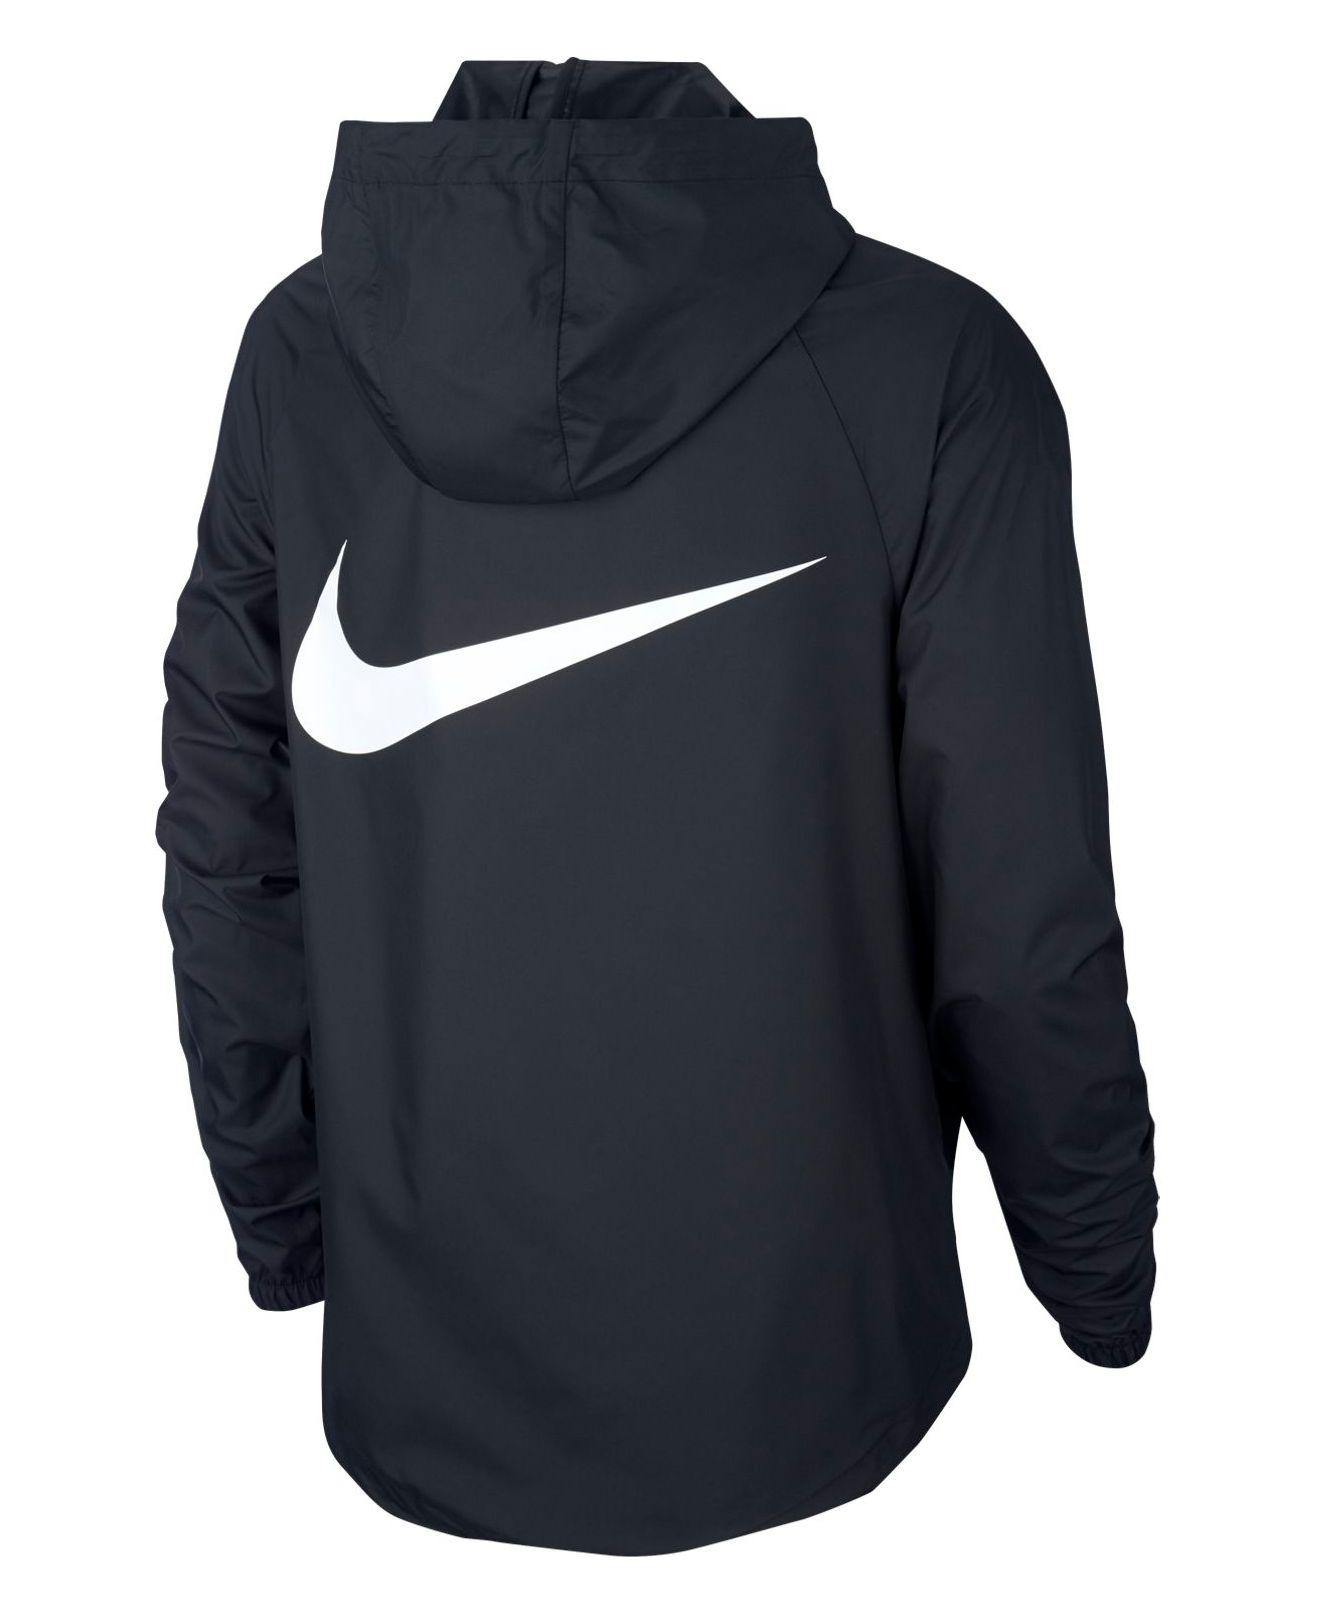 Nike Synthetic Sportswear Packable Half-zip Hooded Jacket in Black - Lyst